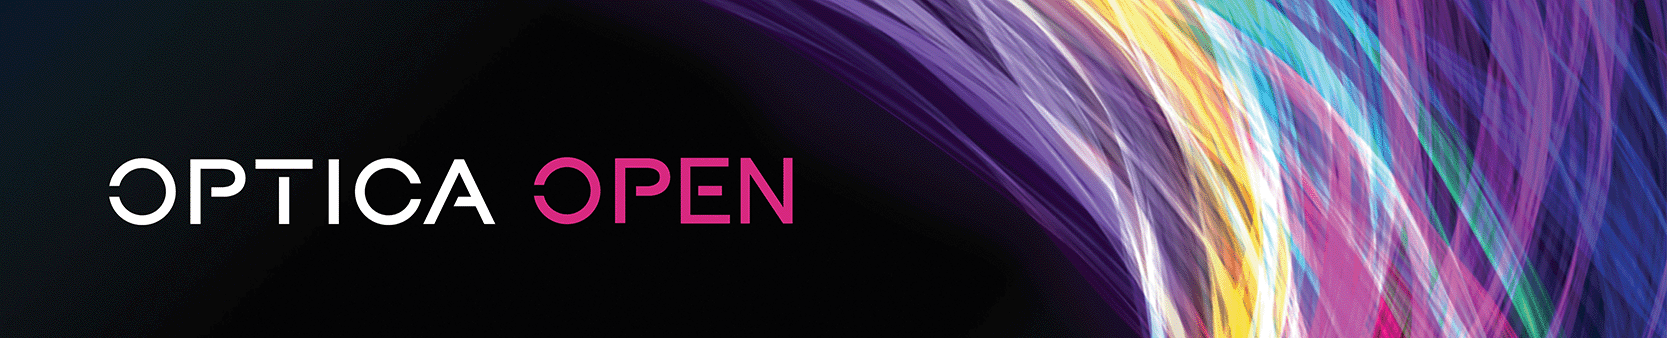 Optica Open banner